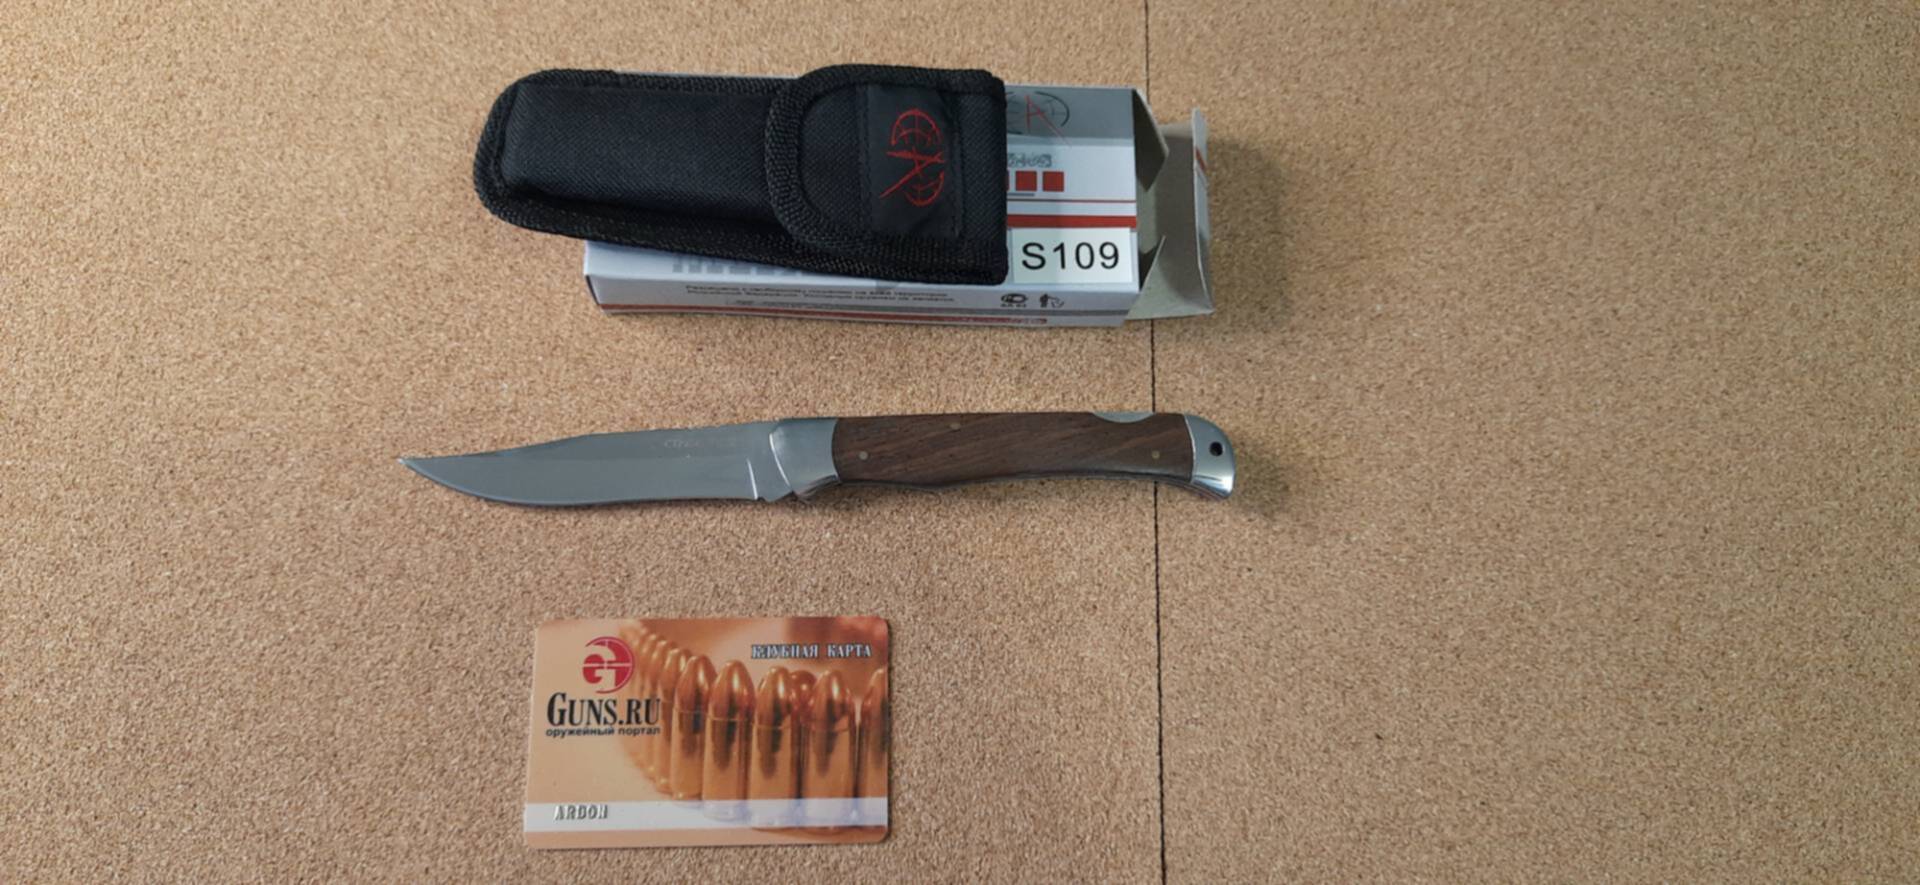 20 ножевых. 20tokens ножевые. Luxe sale нож. Распродажа ножей в связи с закрытием.